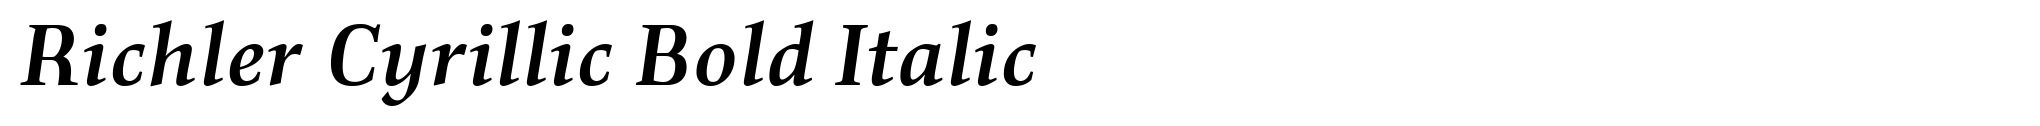 Richler Cyrillic Bold Italic image